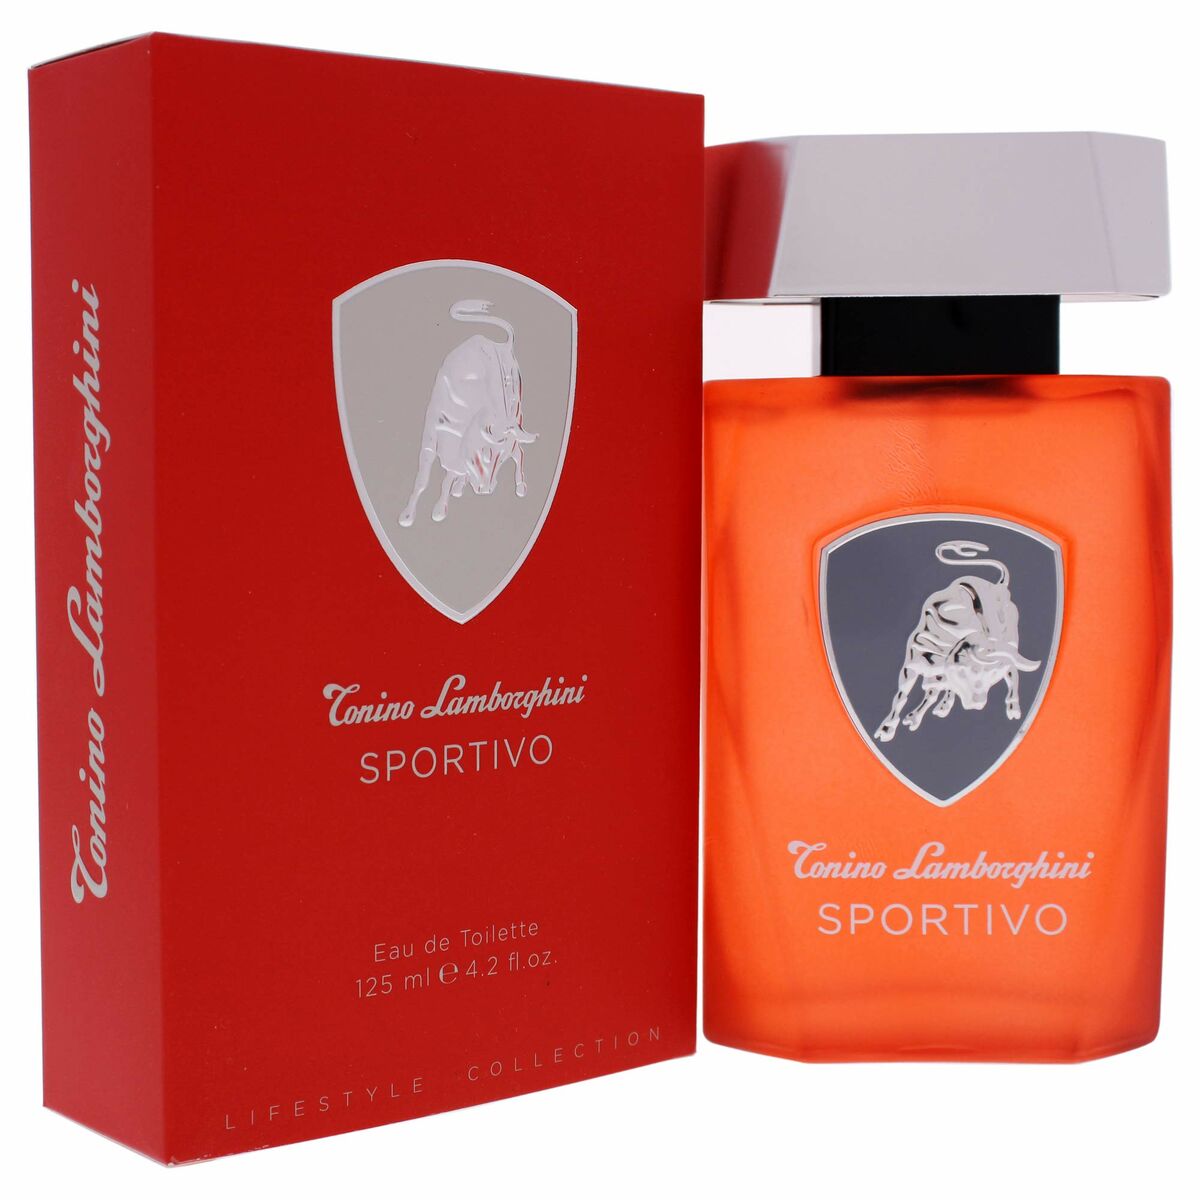 Parfum Homme Tonino Lamborgini EDT Sportivo (125 ml)